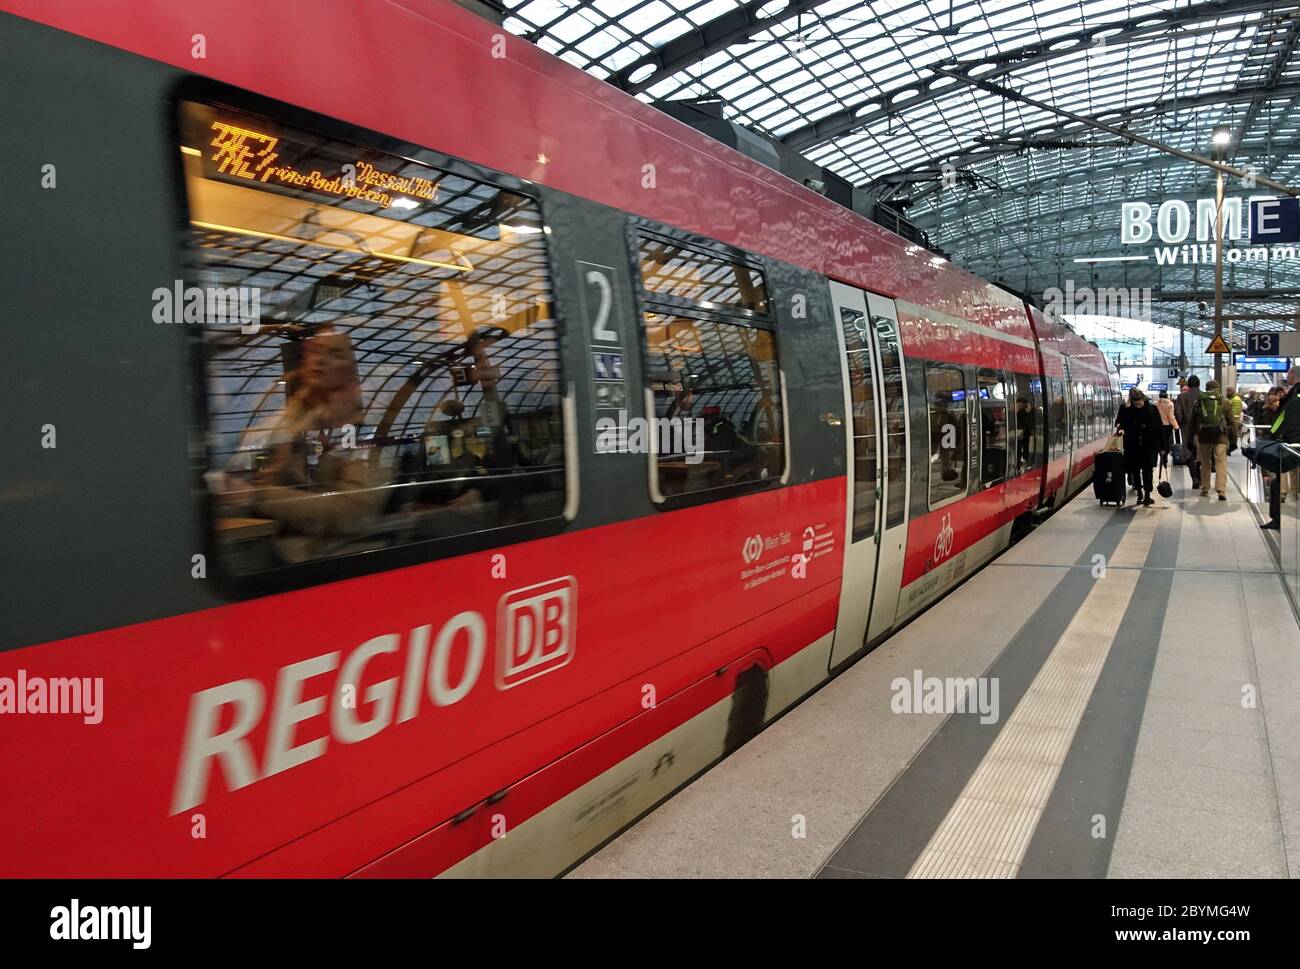 28.02.2020, Berlín, Sajonia, Alemania - Regional Express de la línea 3 en la estación principal. 00S200228D382CAROEX.JPG [VERSIÓN MODELO: NO, VERSIÓN PROPIEDAD: NO Foto de stock